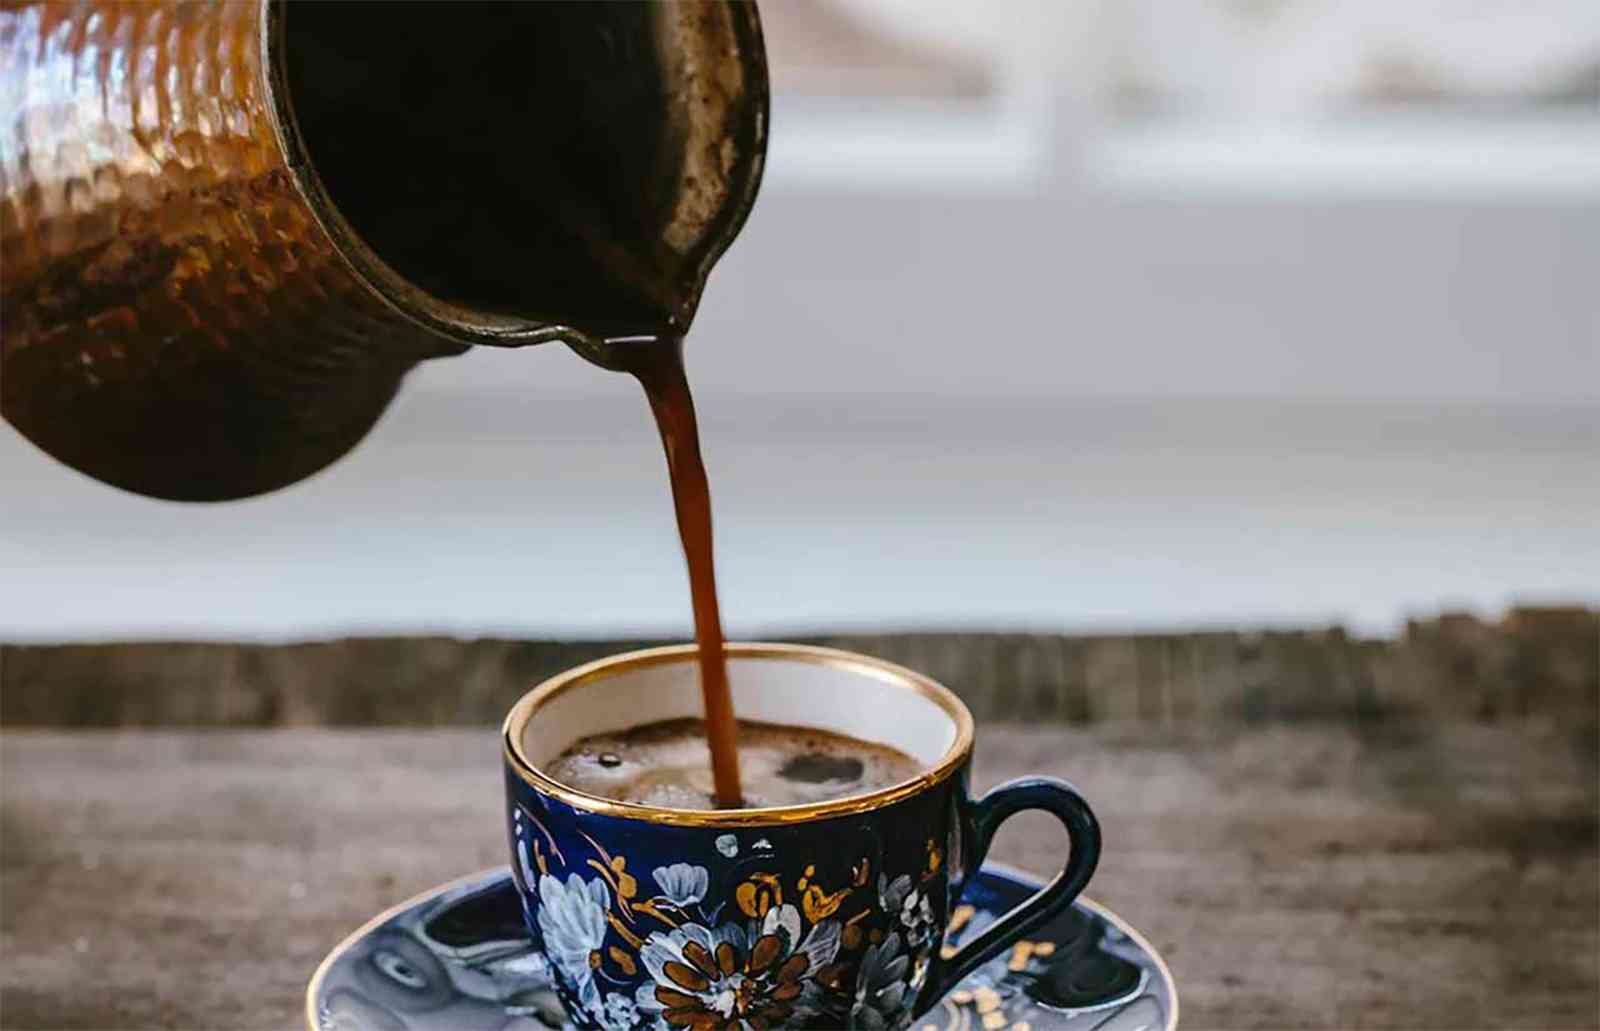 كلام مساء القهوة - كلام عن قهوة المساء - قهوة المساء مع اهلي